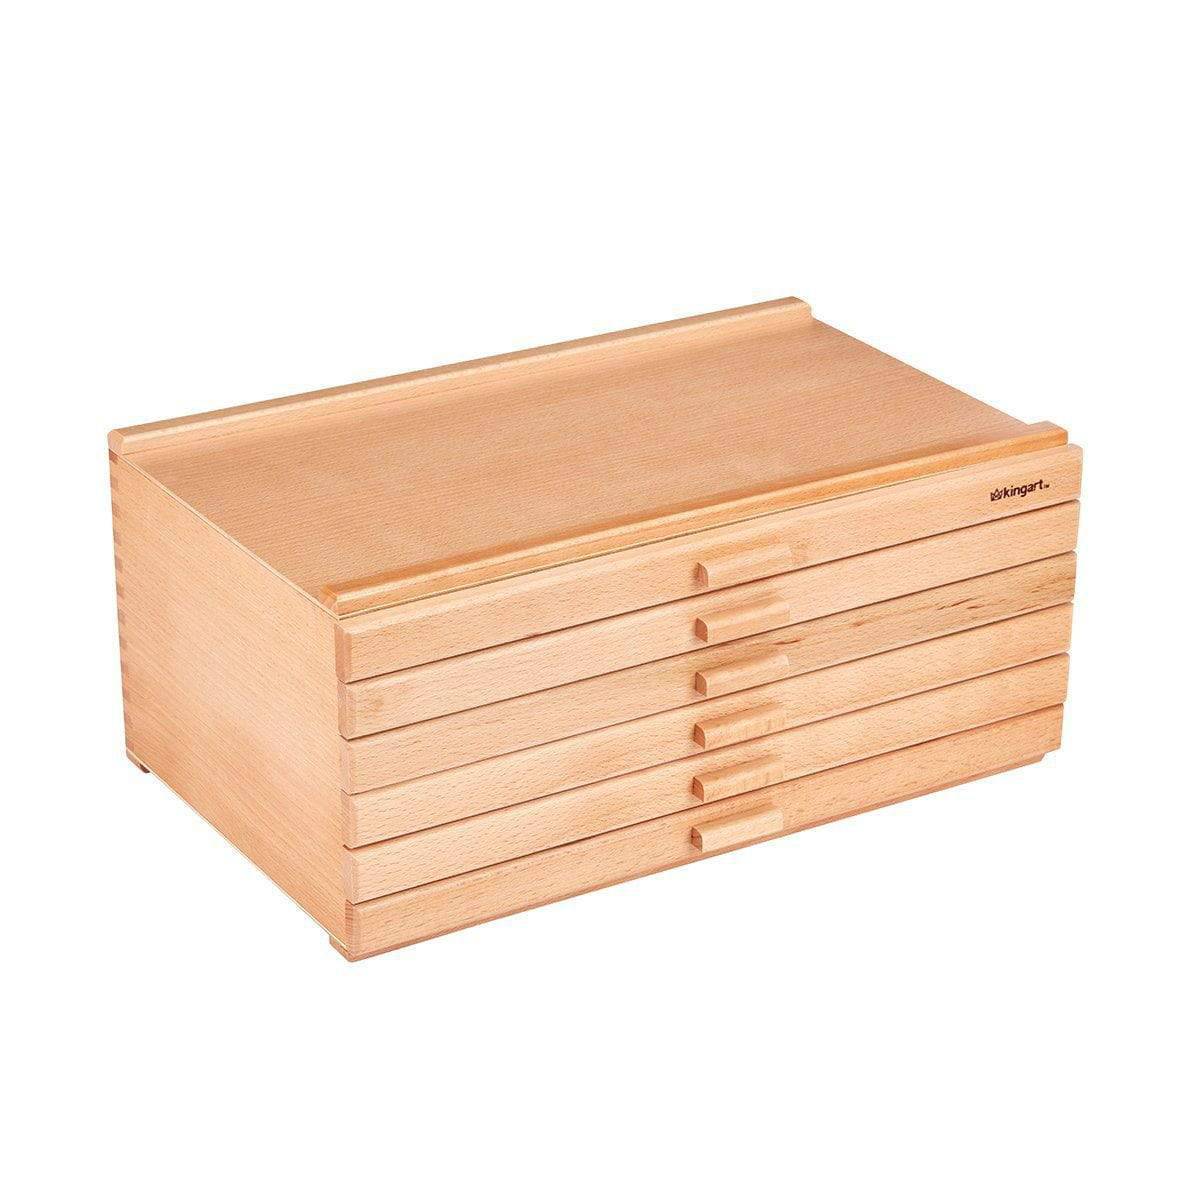 Kingart 2 Tier Wooden Artist Storage Box - Espresso : Target